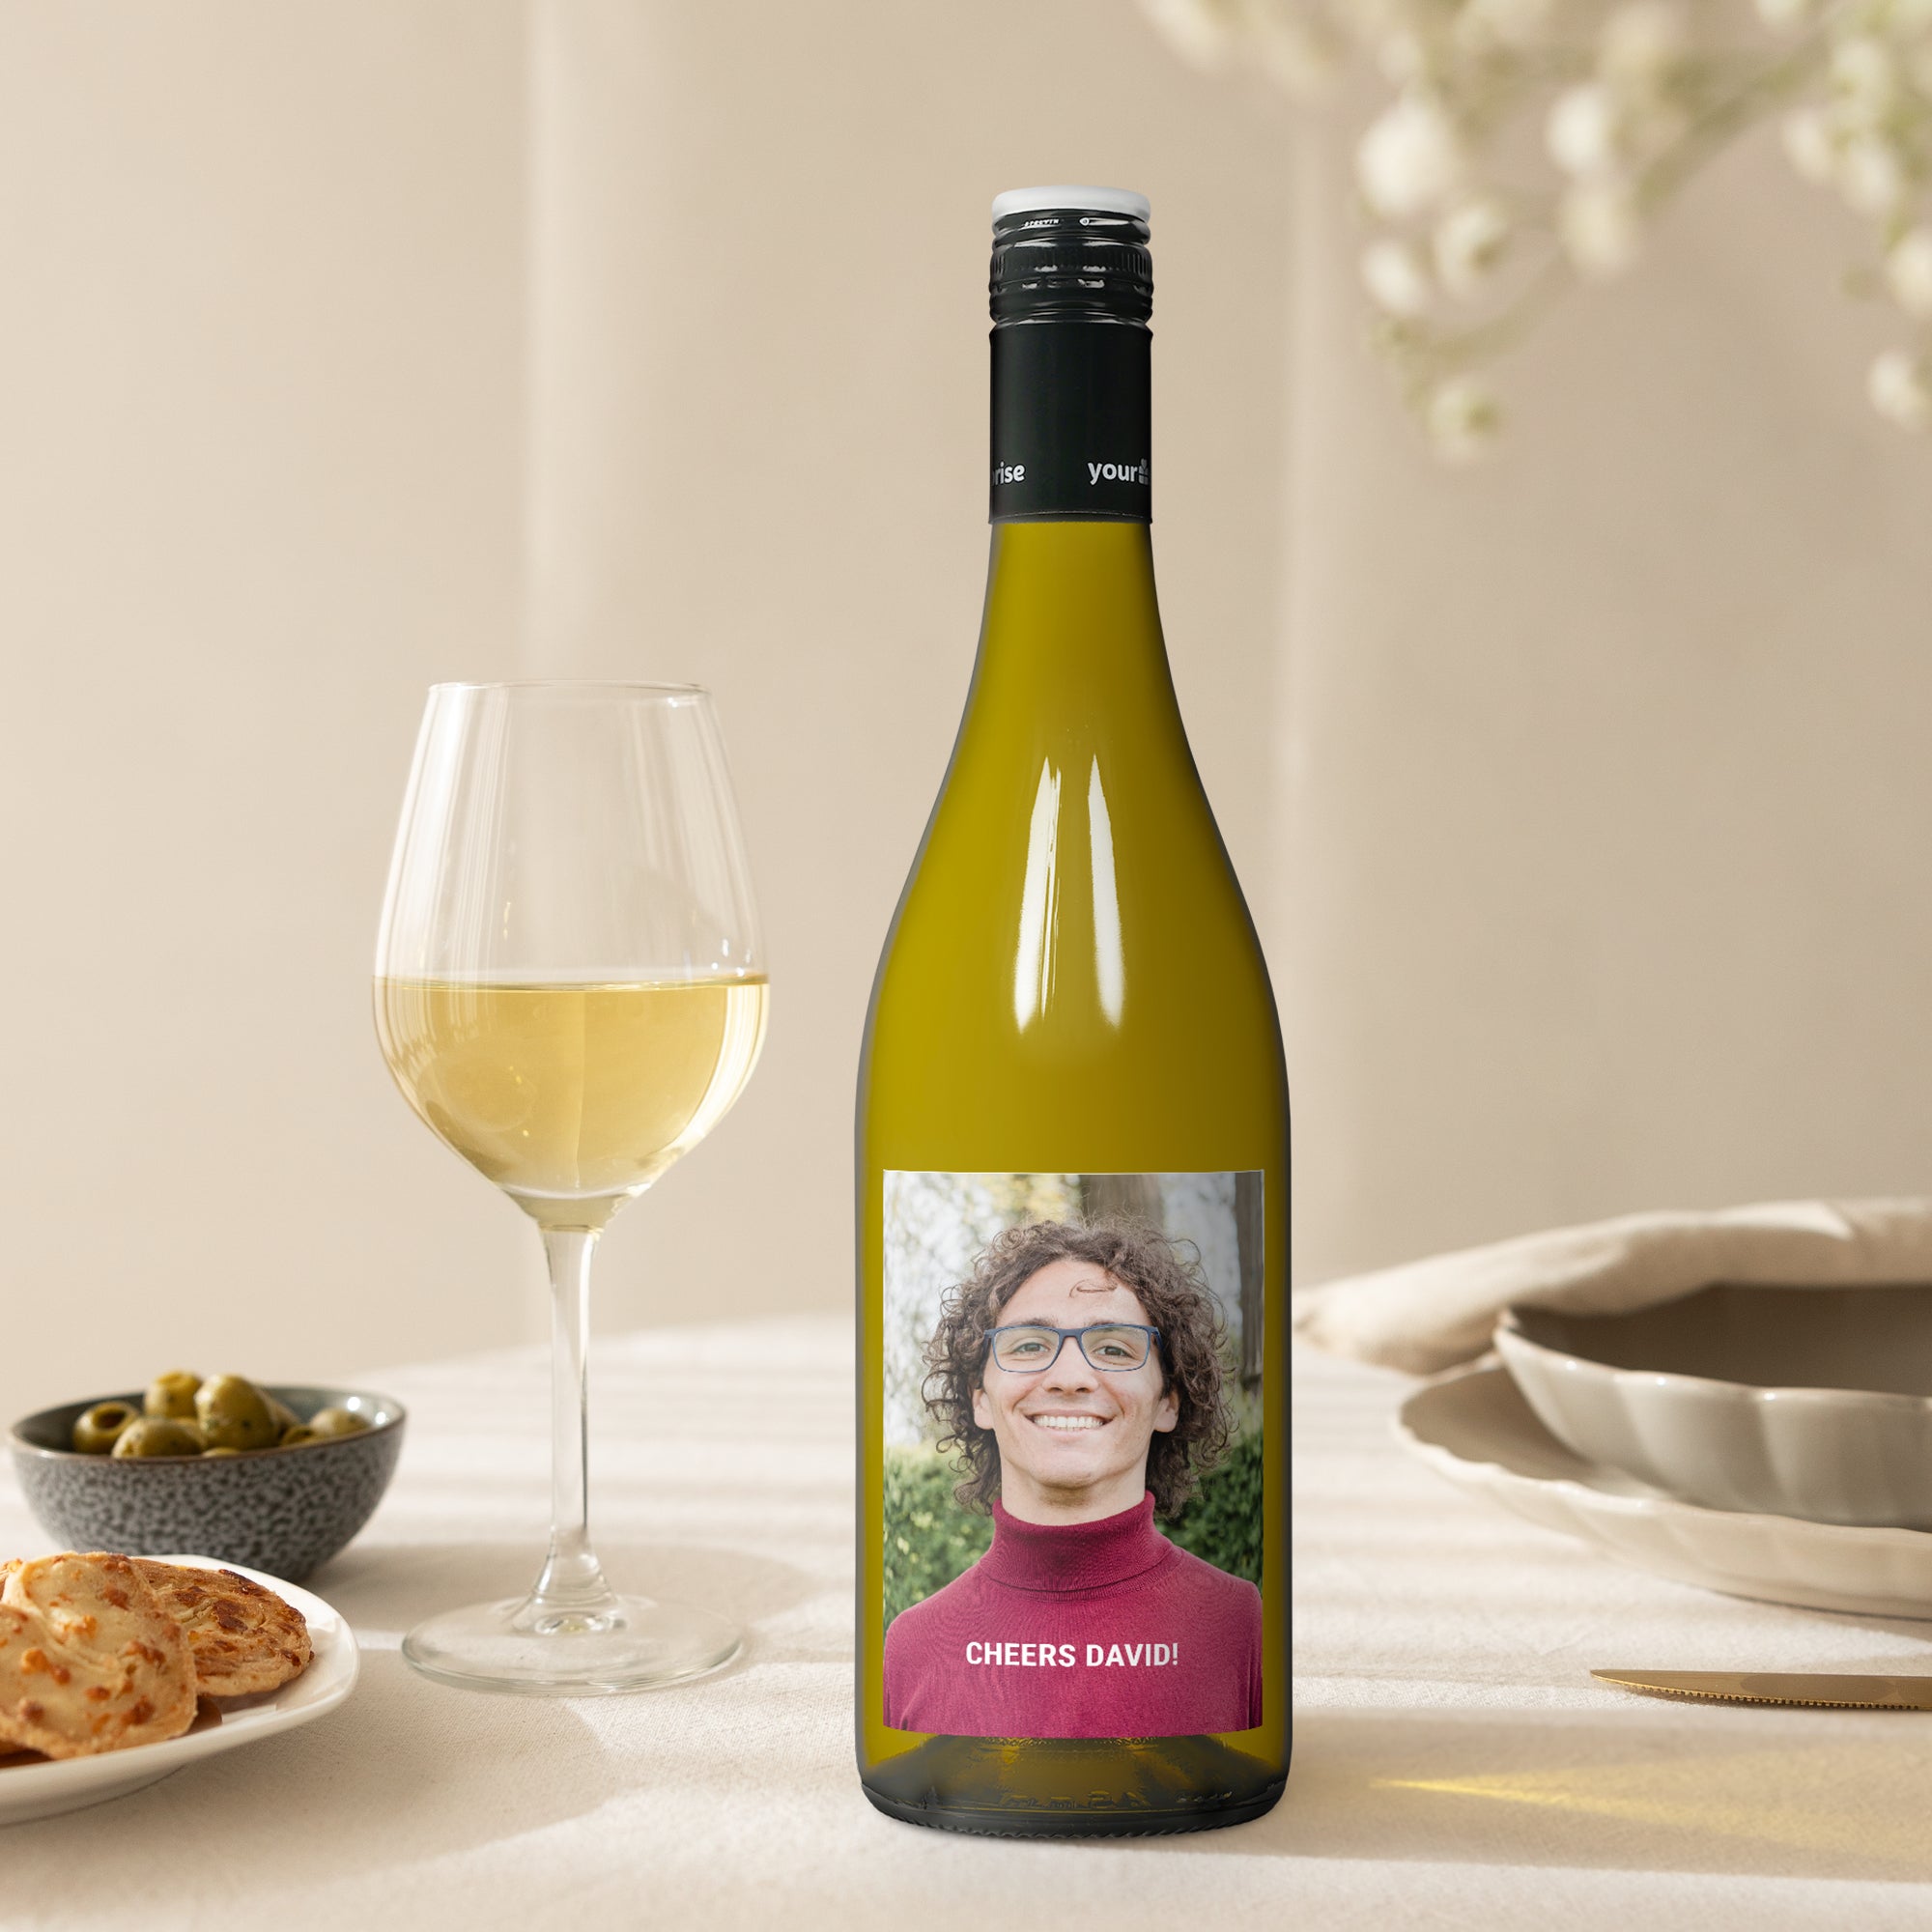 Wine gift set with personalised label - Maison de la Surprise - Merlot & Chardonnay